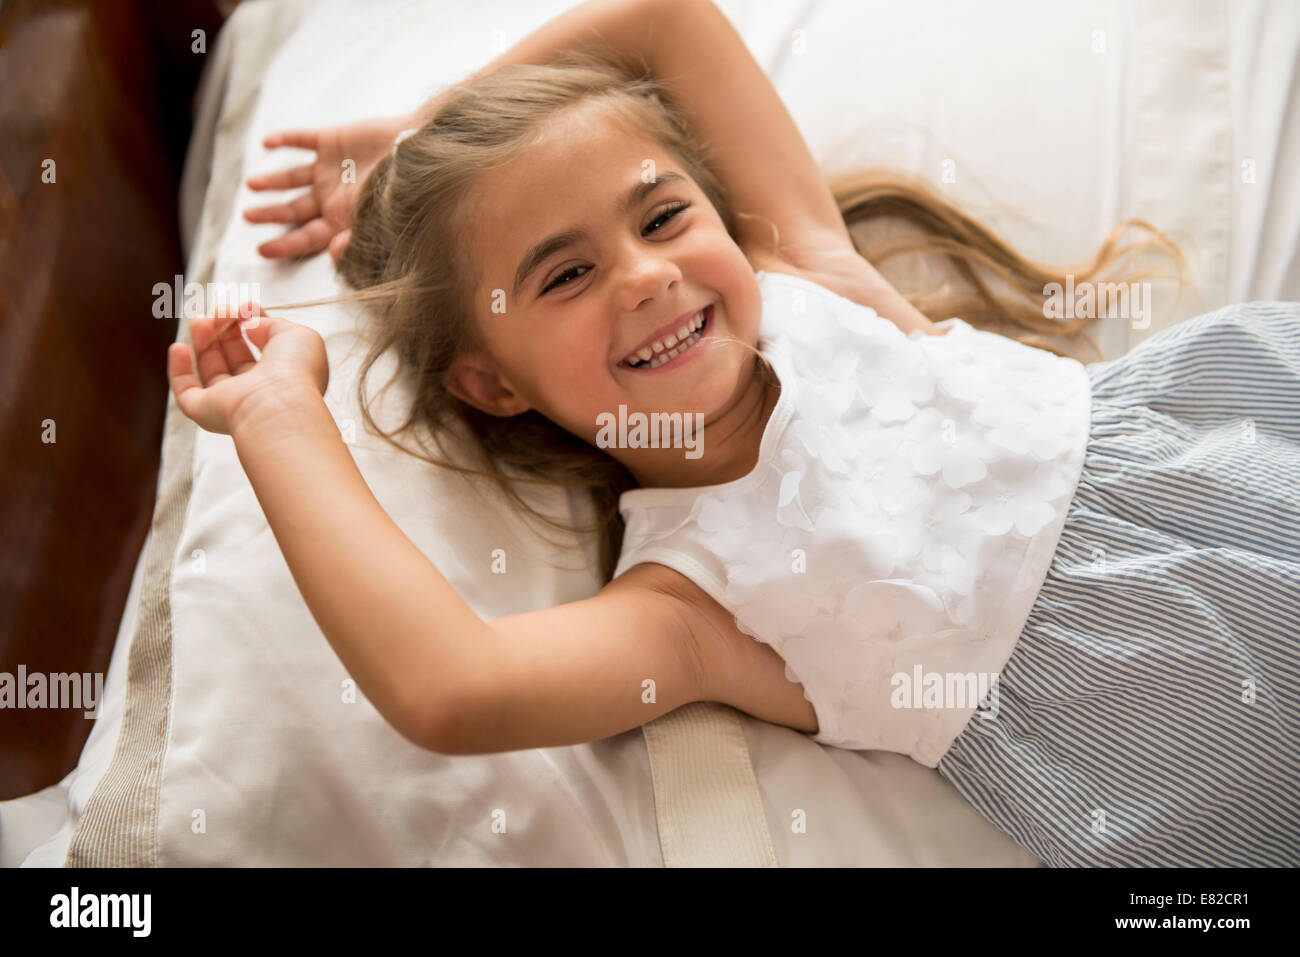 Una giovane ragazza guardando la telecamera, sorridente. Foto Stock